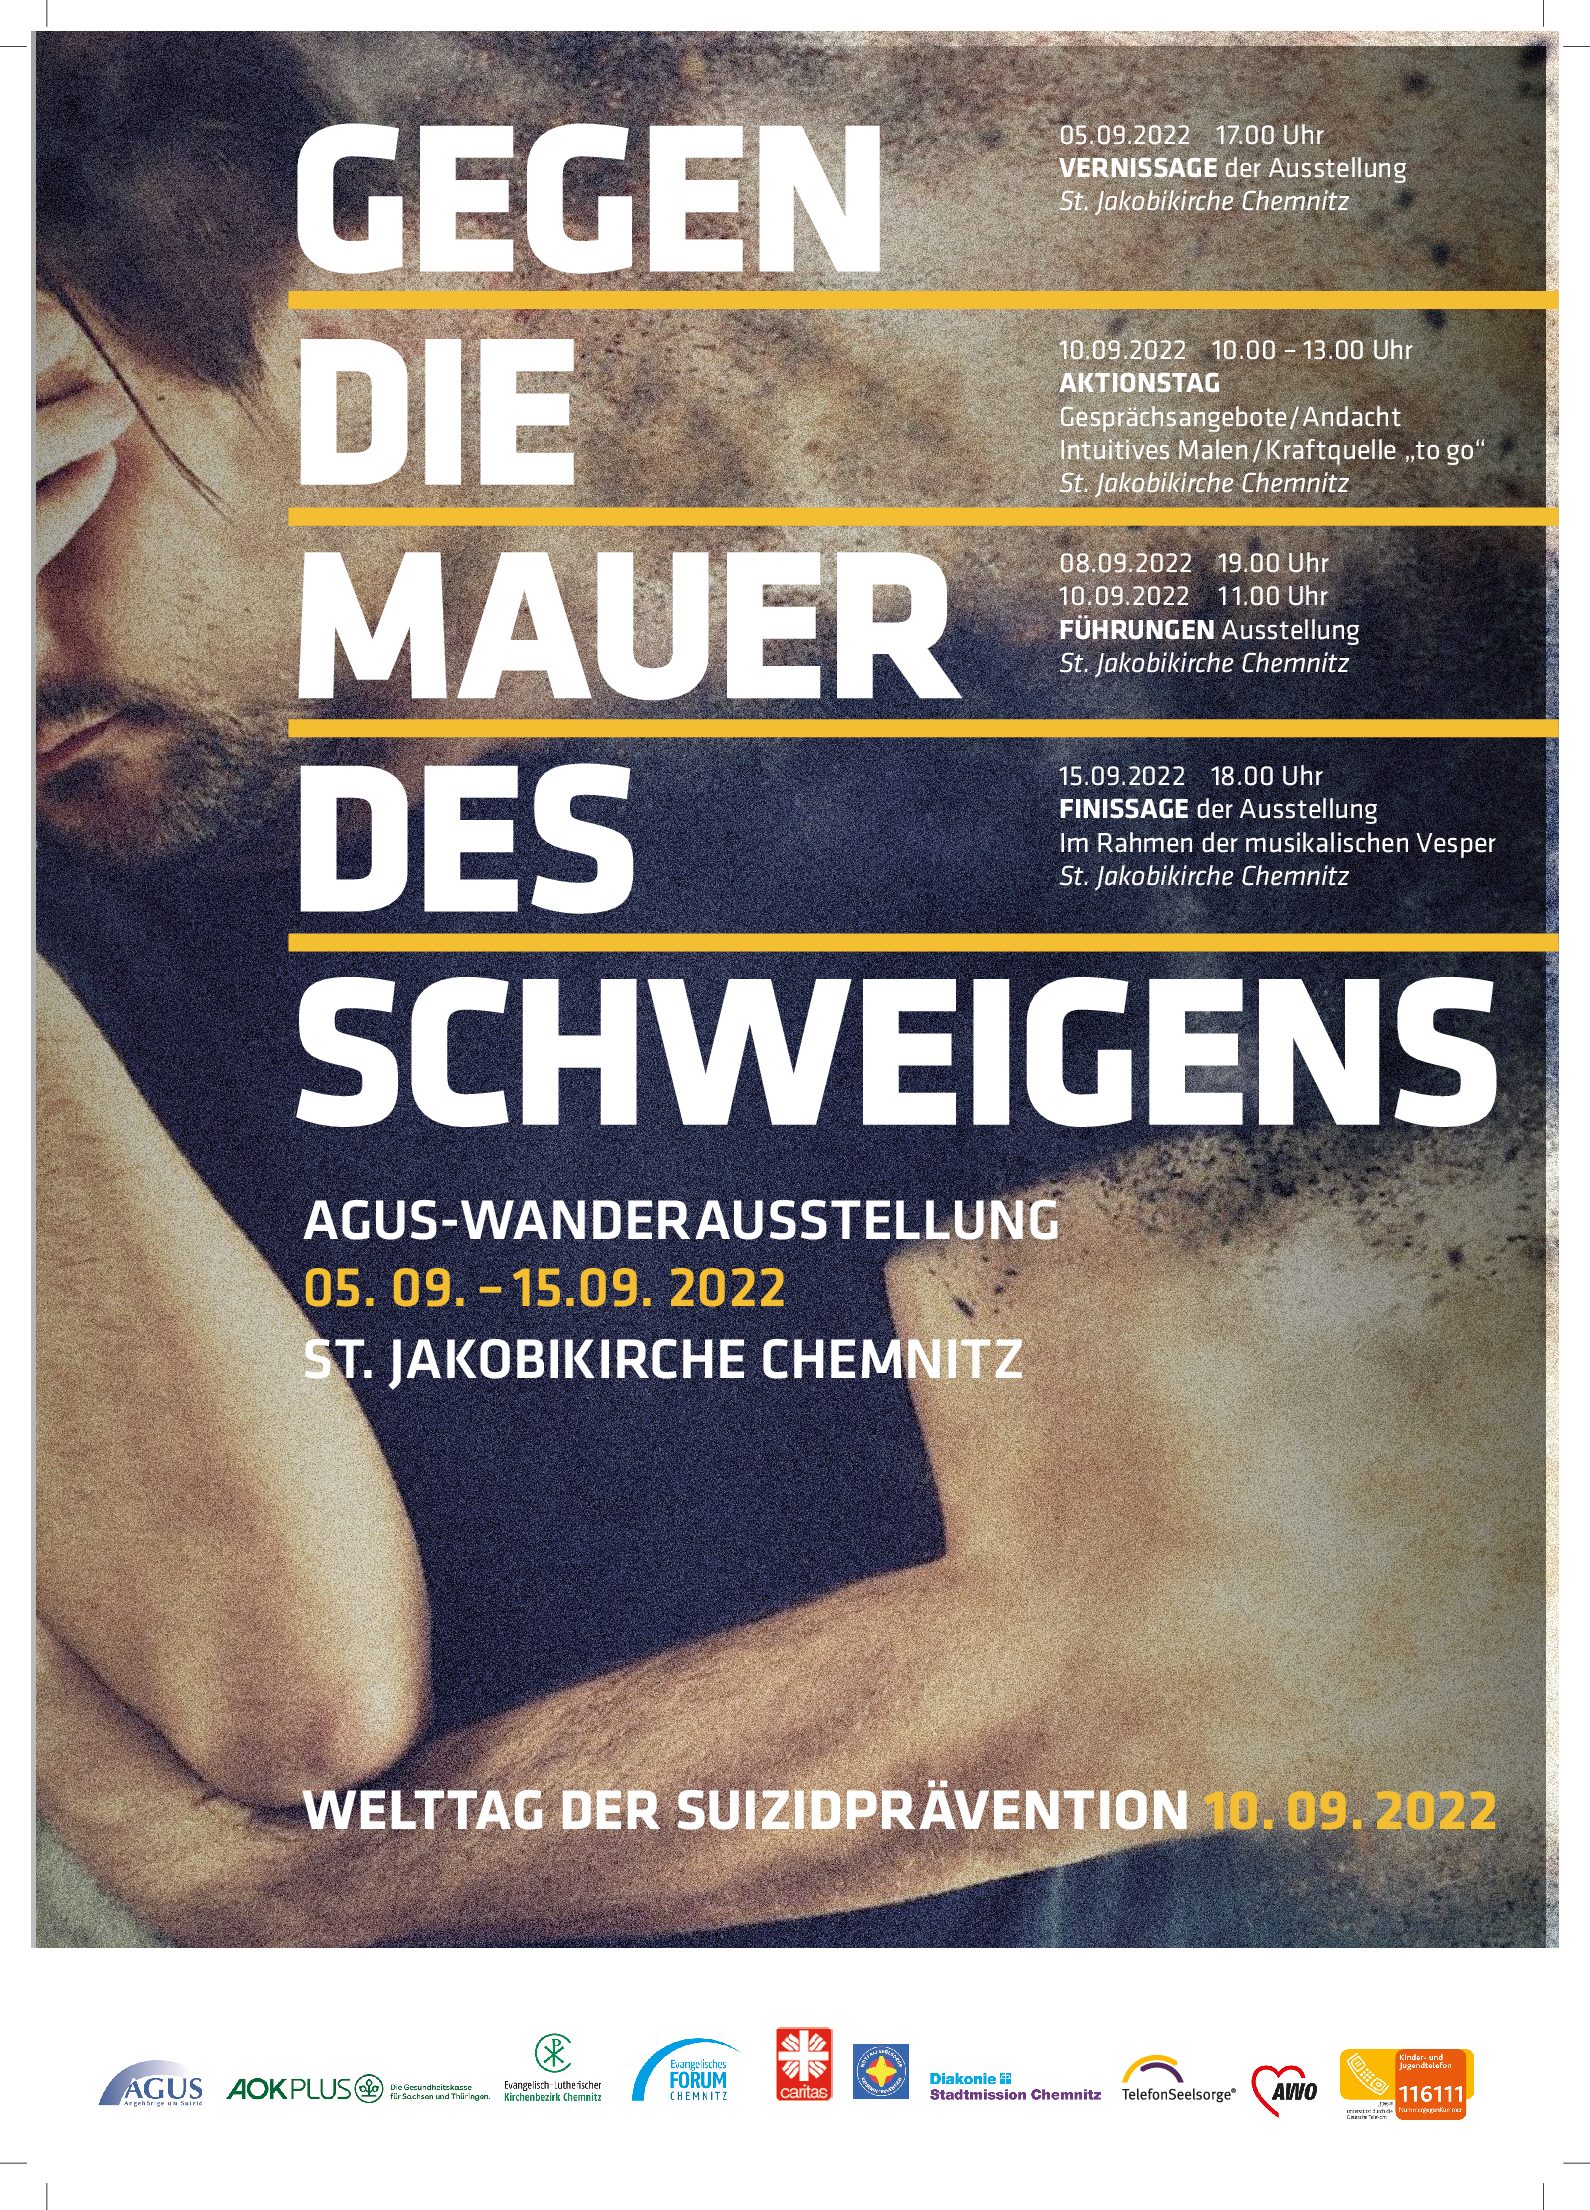 Welttag der Suizidprävention 2022 in Chemnitz